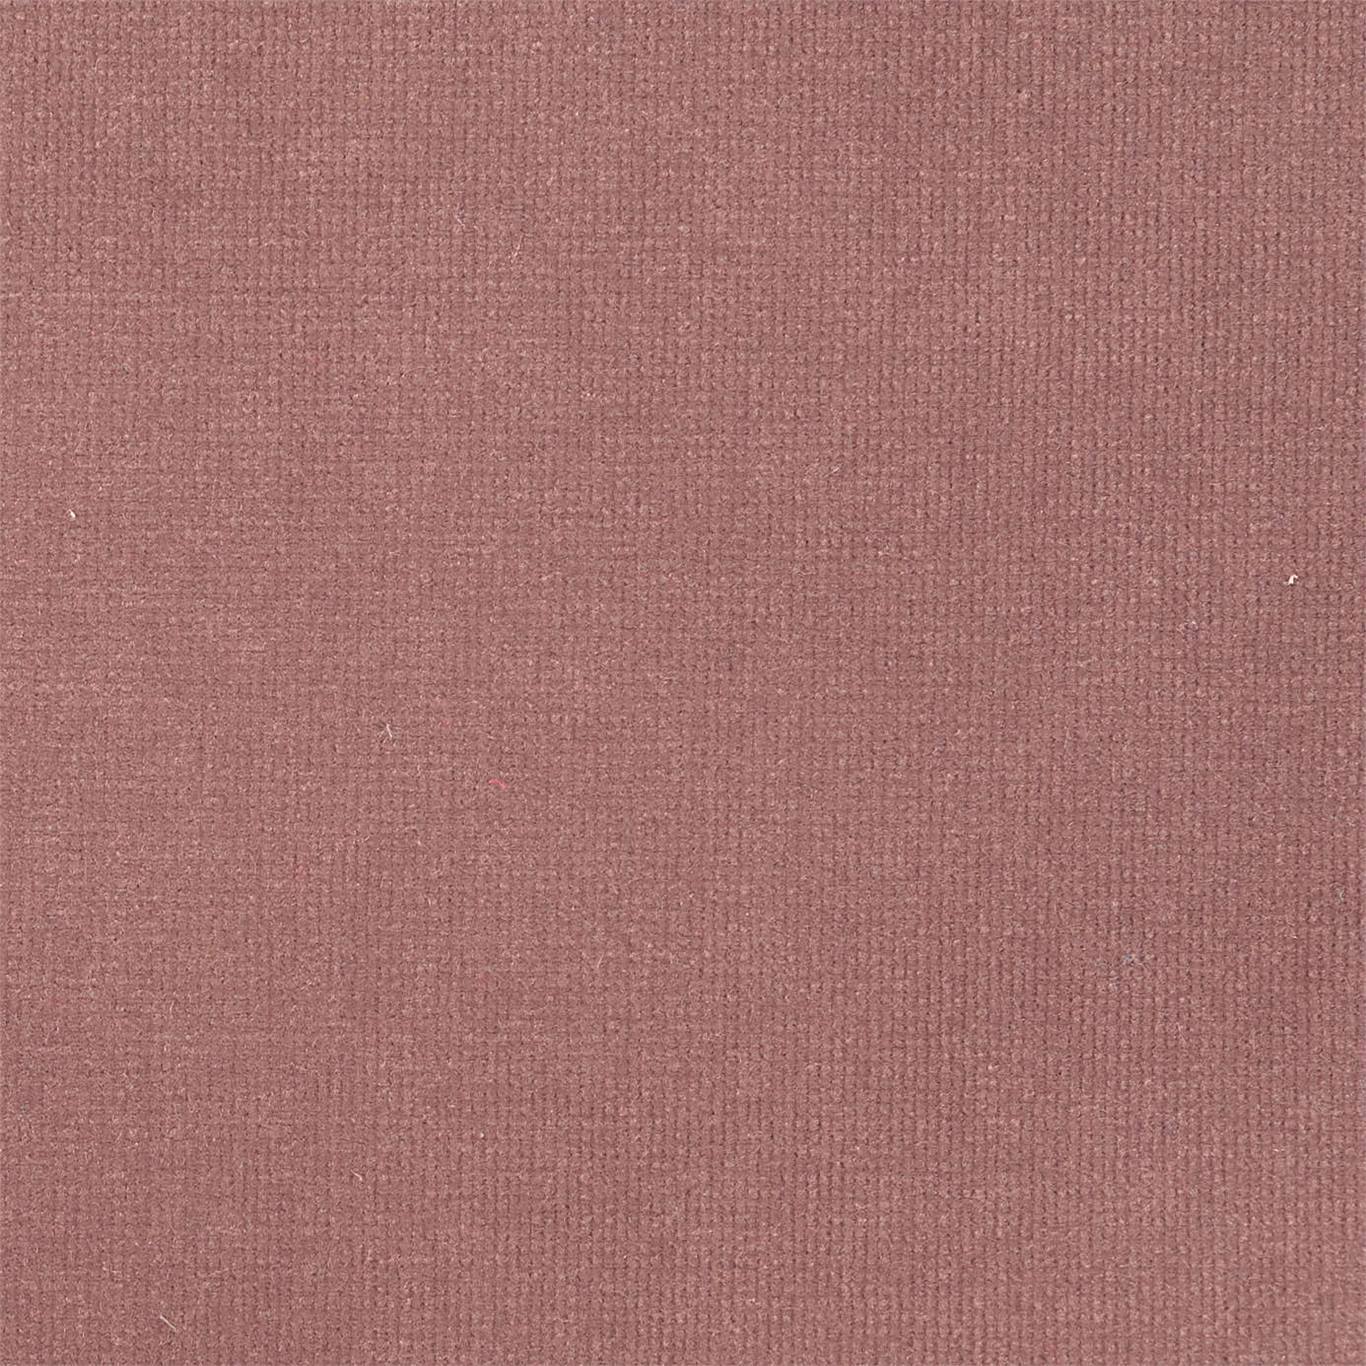 Plush Velvet Rose Quartz Fabric by HAR